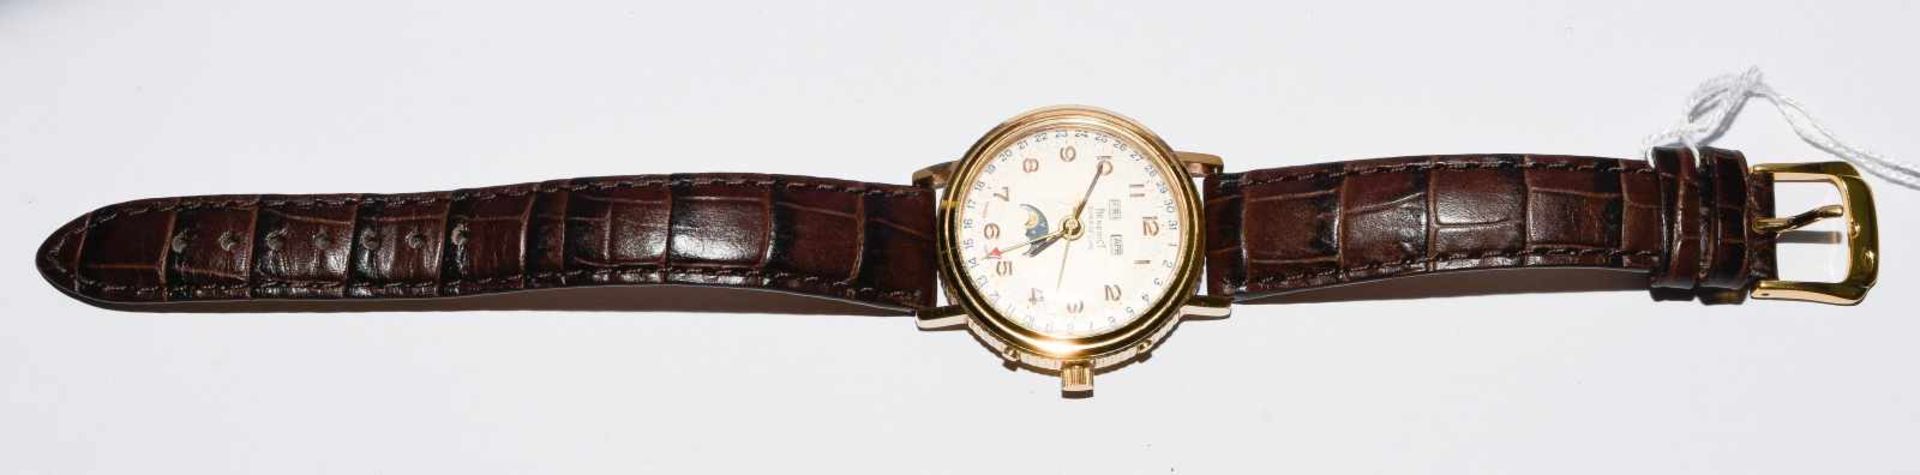 Benedict Super De LuxeRunde, mechanische Armbanduhr 60er Jahre mit Vollkalender und Handaufzug in - Bild 2 aus 7